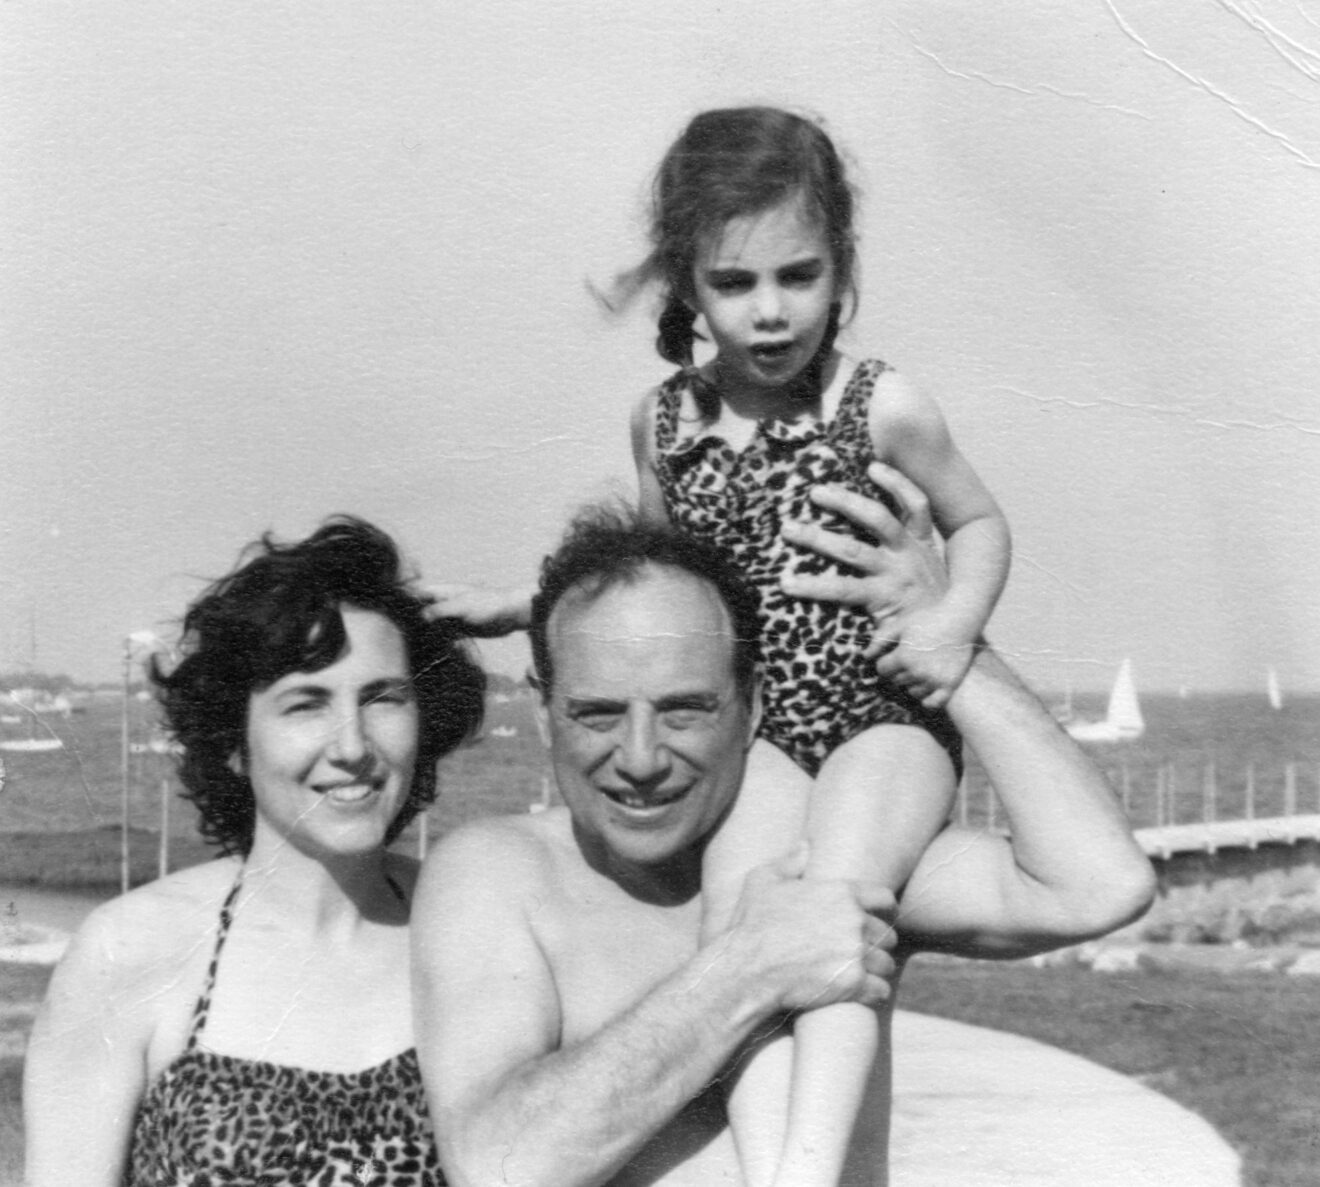 Ben Graham, Marjorie and Charlo, June 1954